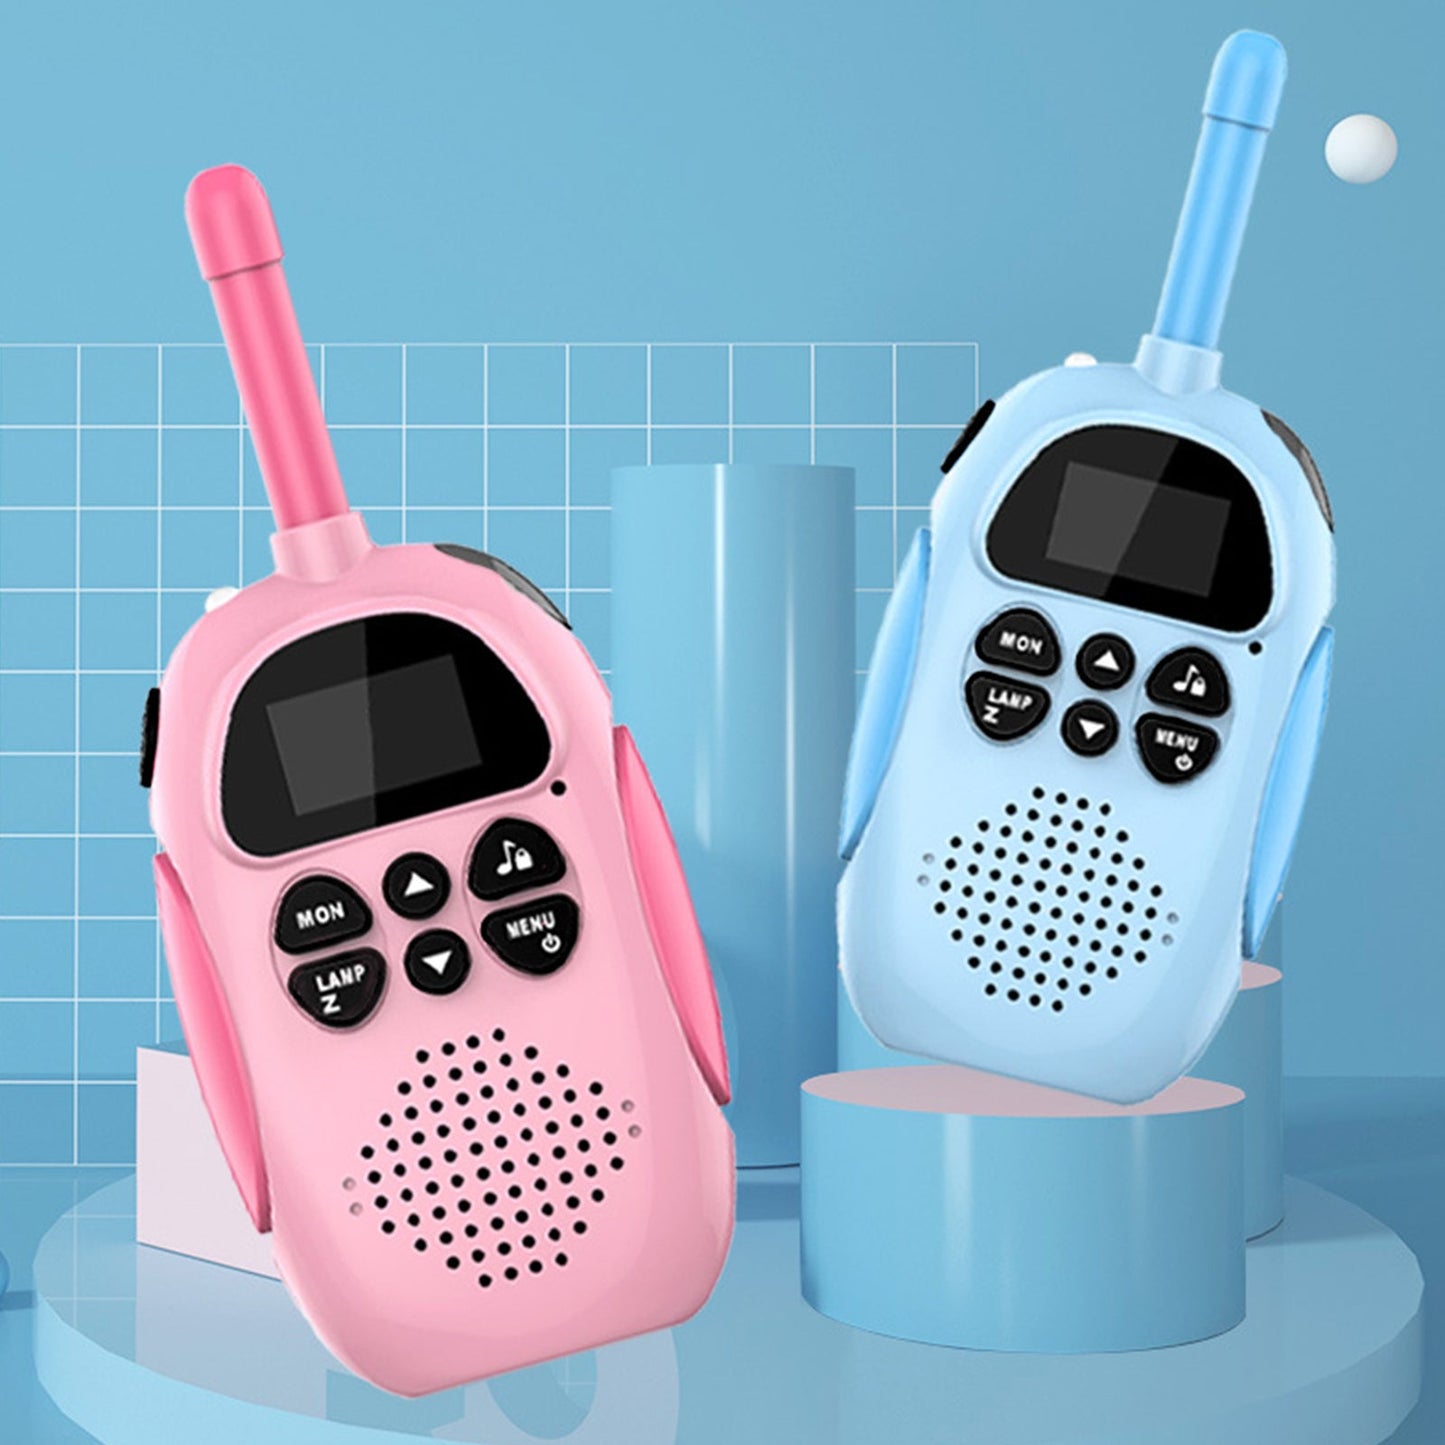 Lot de 2 talkies-walkies pour enfants 22 canaux 2 voies radio bidirectionnelle portée 3 km portable original